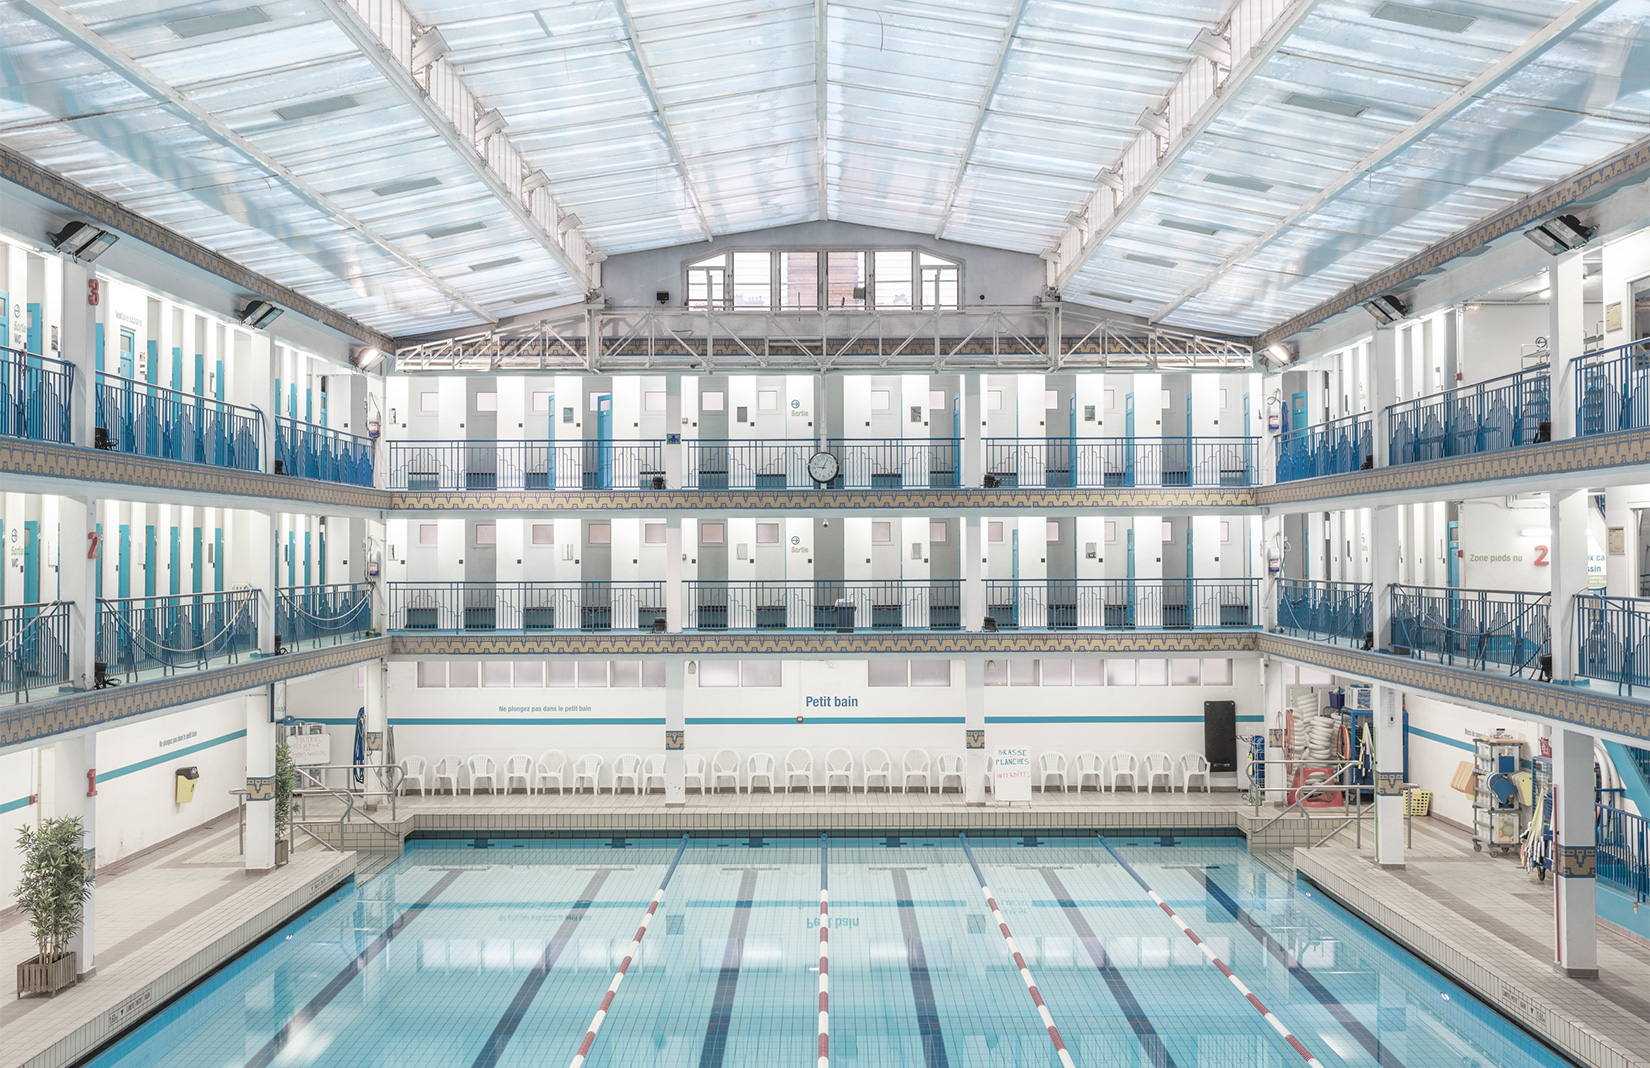 Explore Paris’ incredible architectural swimming pools